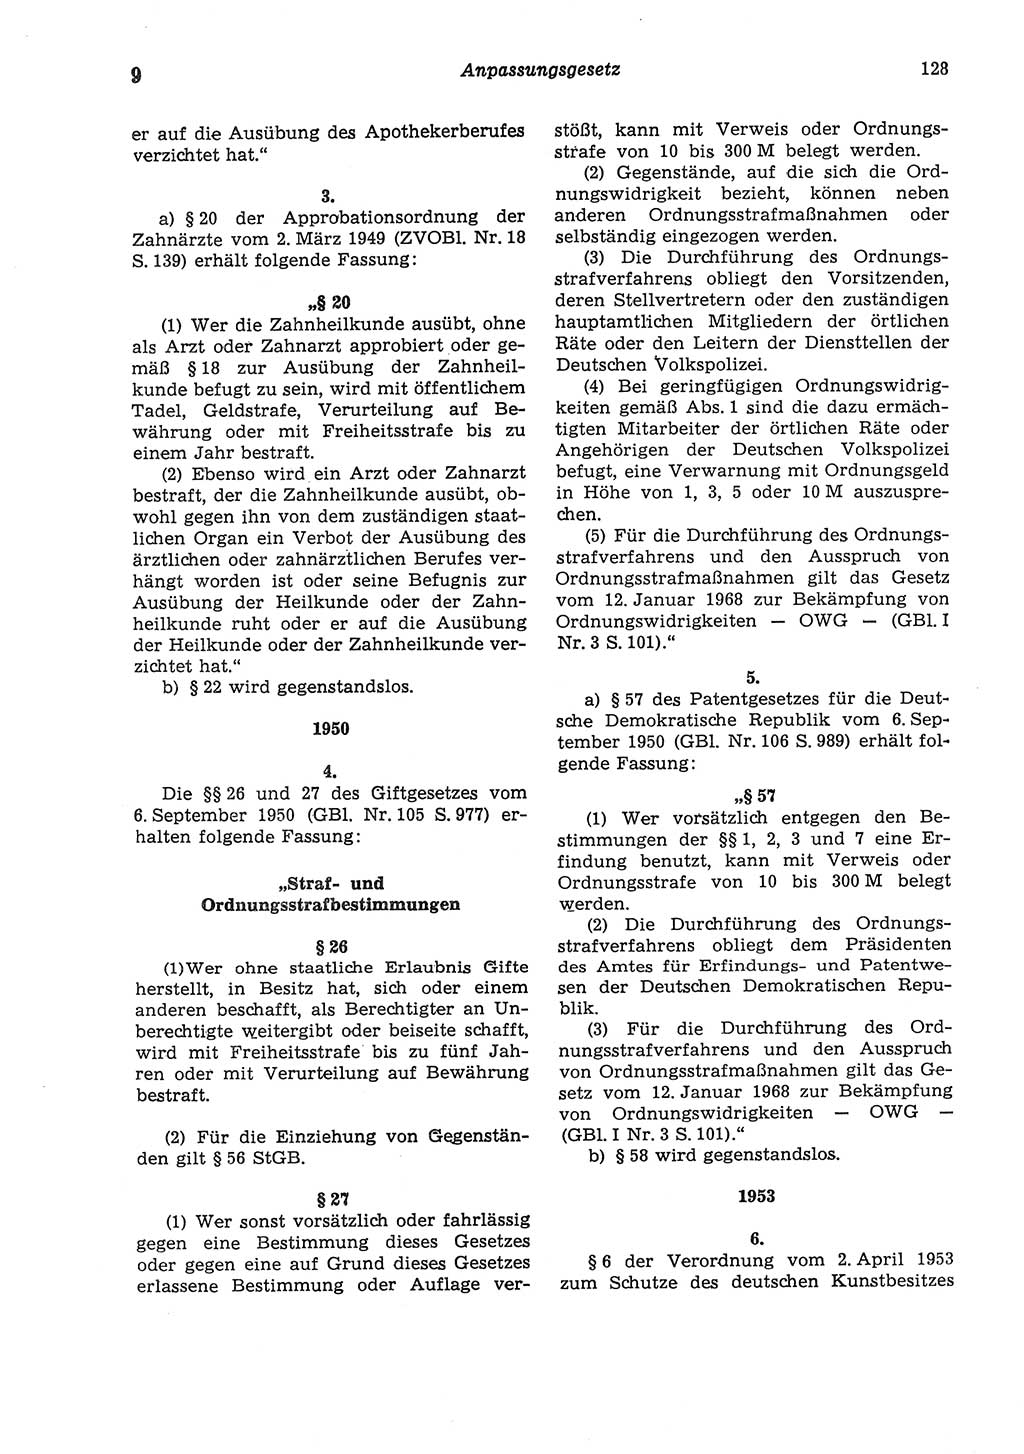 Strafgesetzbuch (StGB) der Deutschen Demokratischen Republik (DDR) und angrenzende Gesetze und Bestimmungen 1975, Seite 128 (StGB DDR Ges. Best. 1975, S. 128)